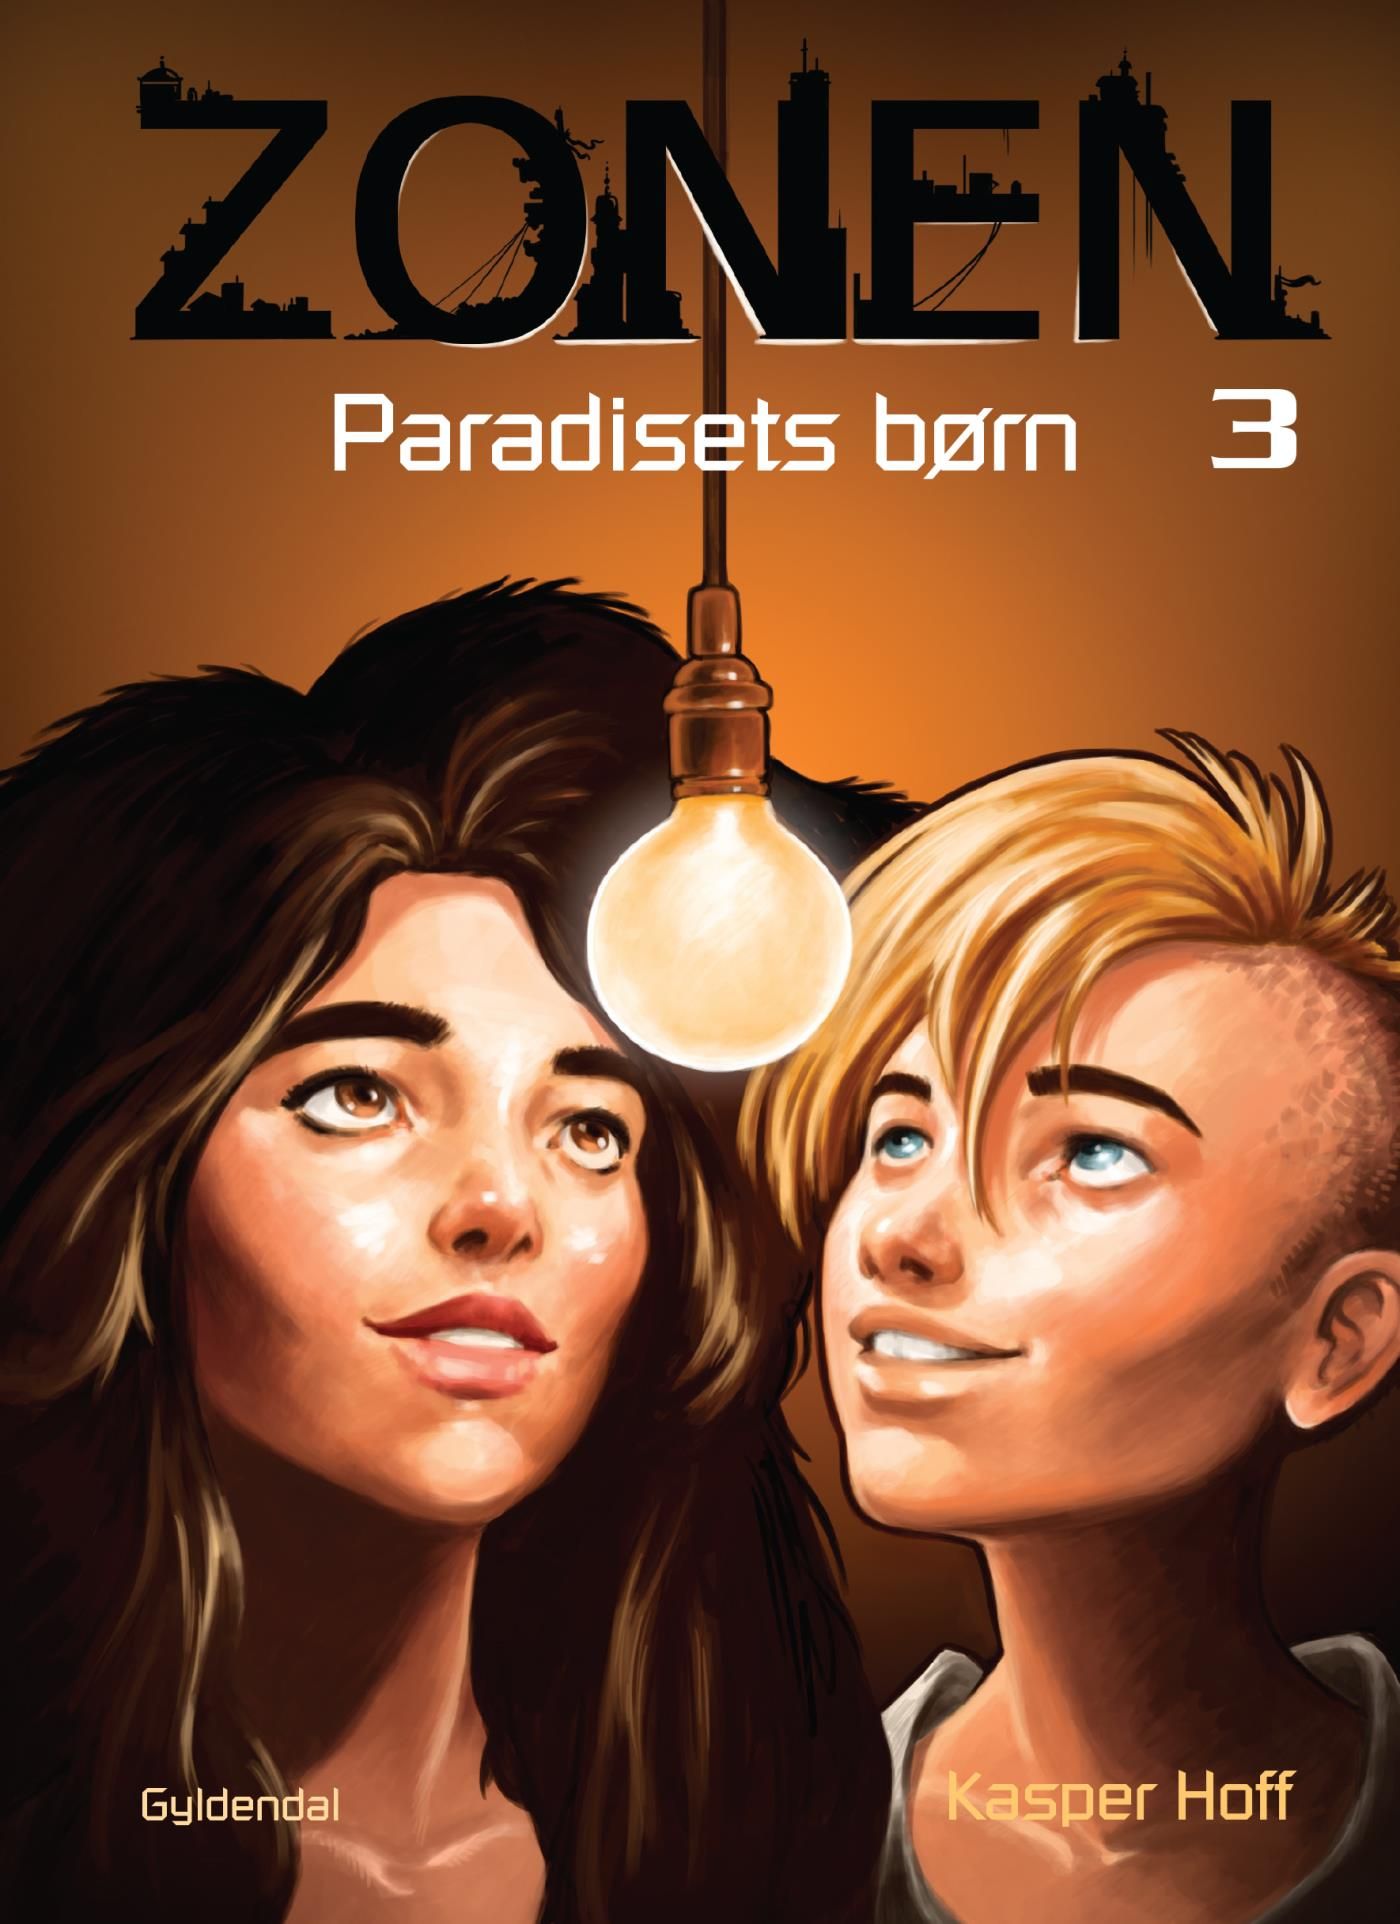 Zonen 3 - Paradisets børn, eBook by Kasper Hoff